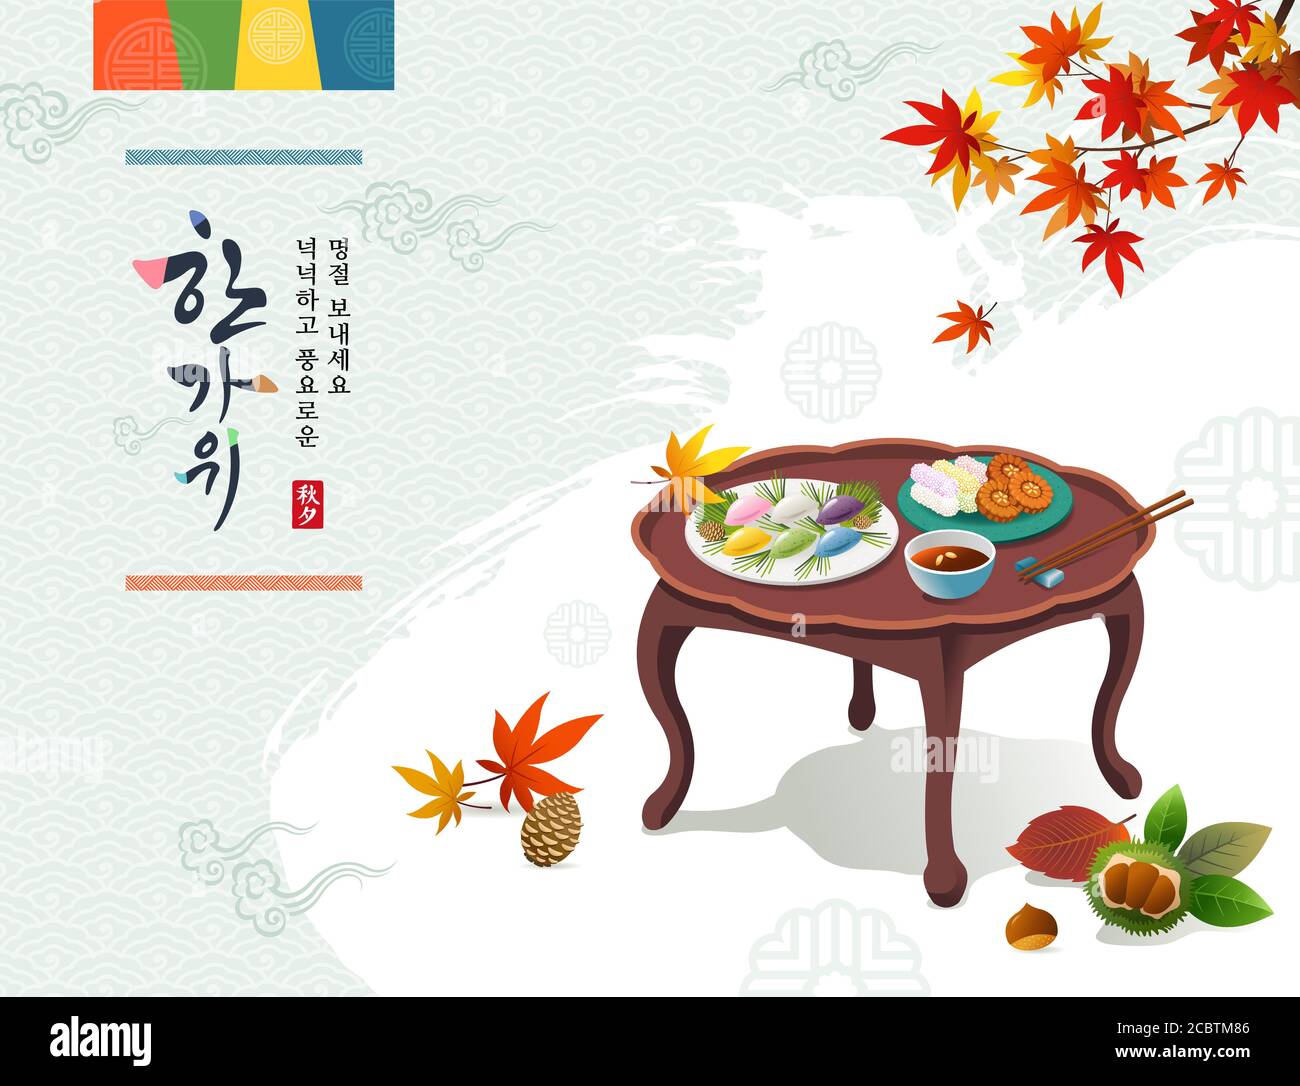 Koreanischer Erntedankfest. Traditionelle Urlaubskost, Songpyeon, Desserts. Reiche Ernte und Hangawi, koreanische Übersetzung. Stock Vektor